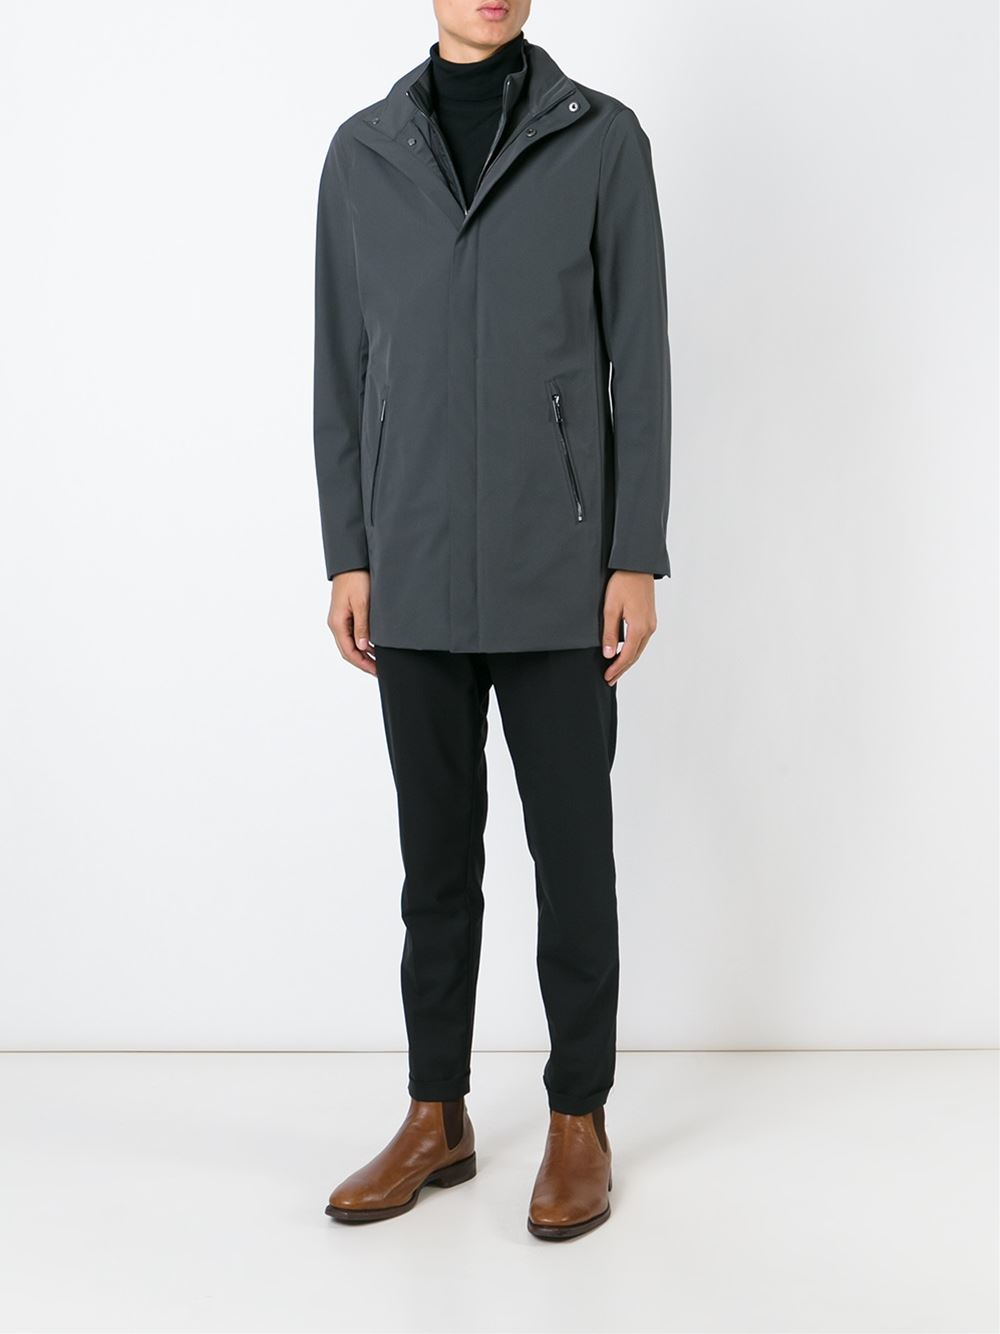 Lyst - Michael Kors Short Raincoat in Black for Men